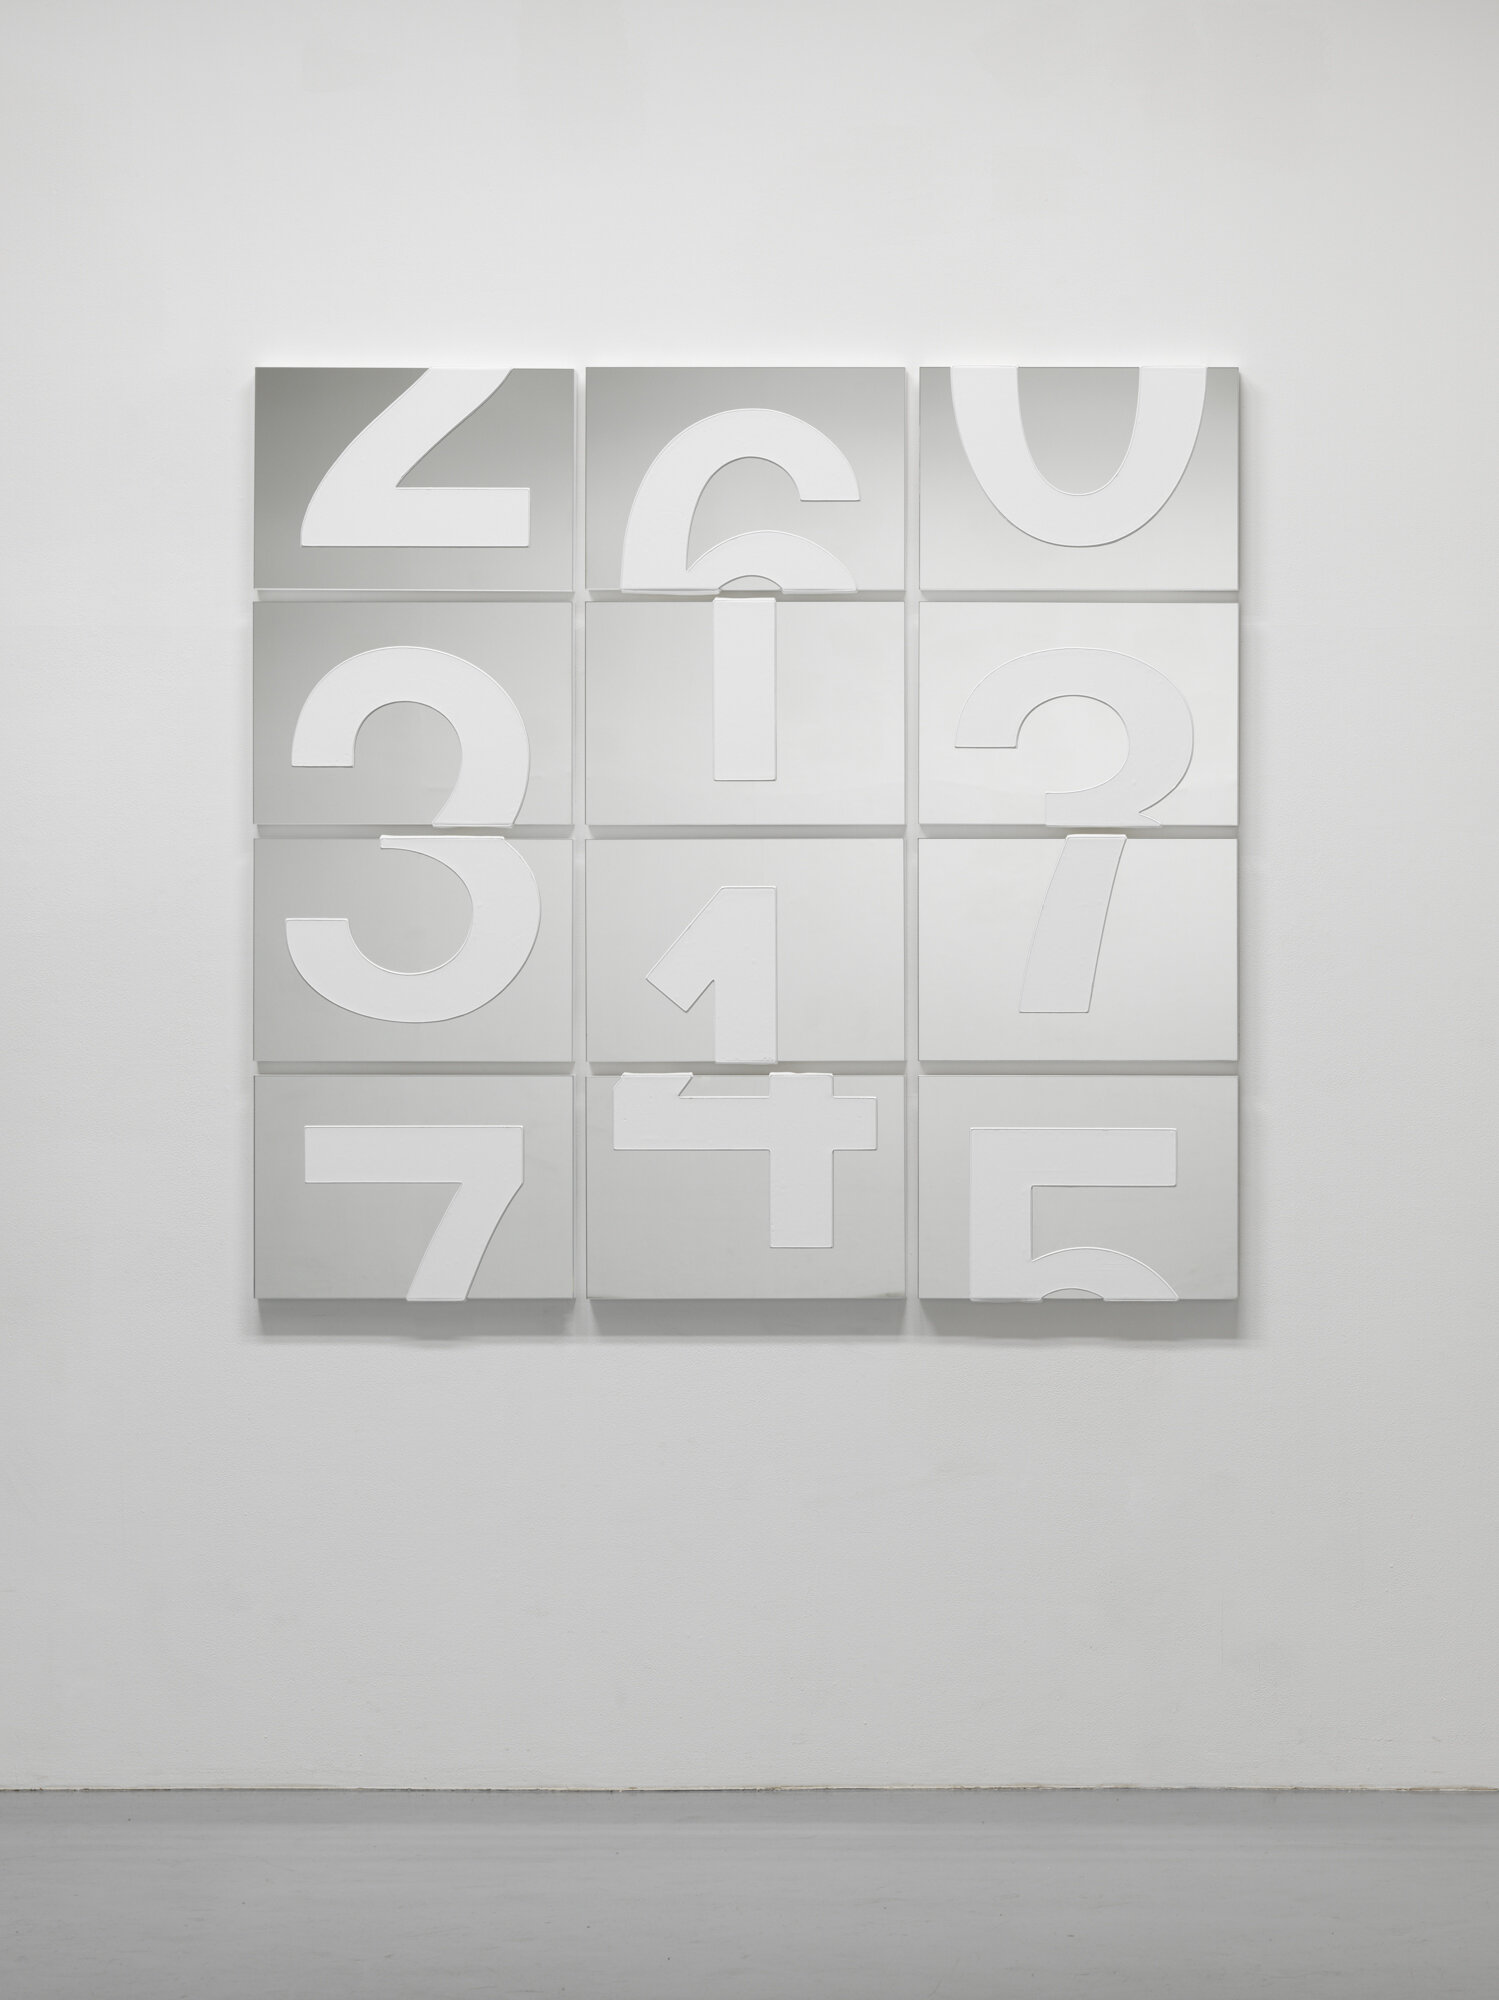 ダレン・アーモンドIn Reflection 0062015年鏡にアクリル146×154cm